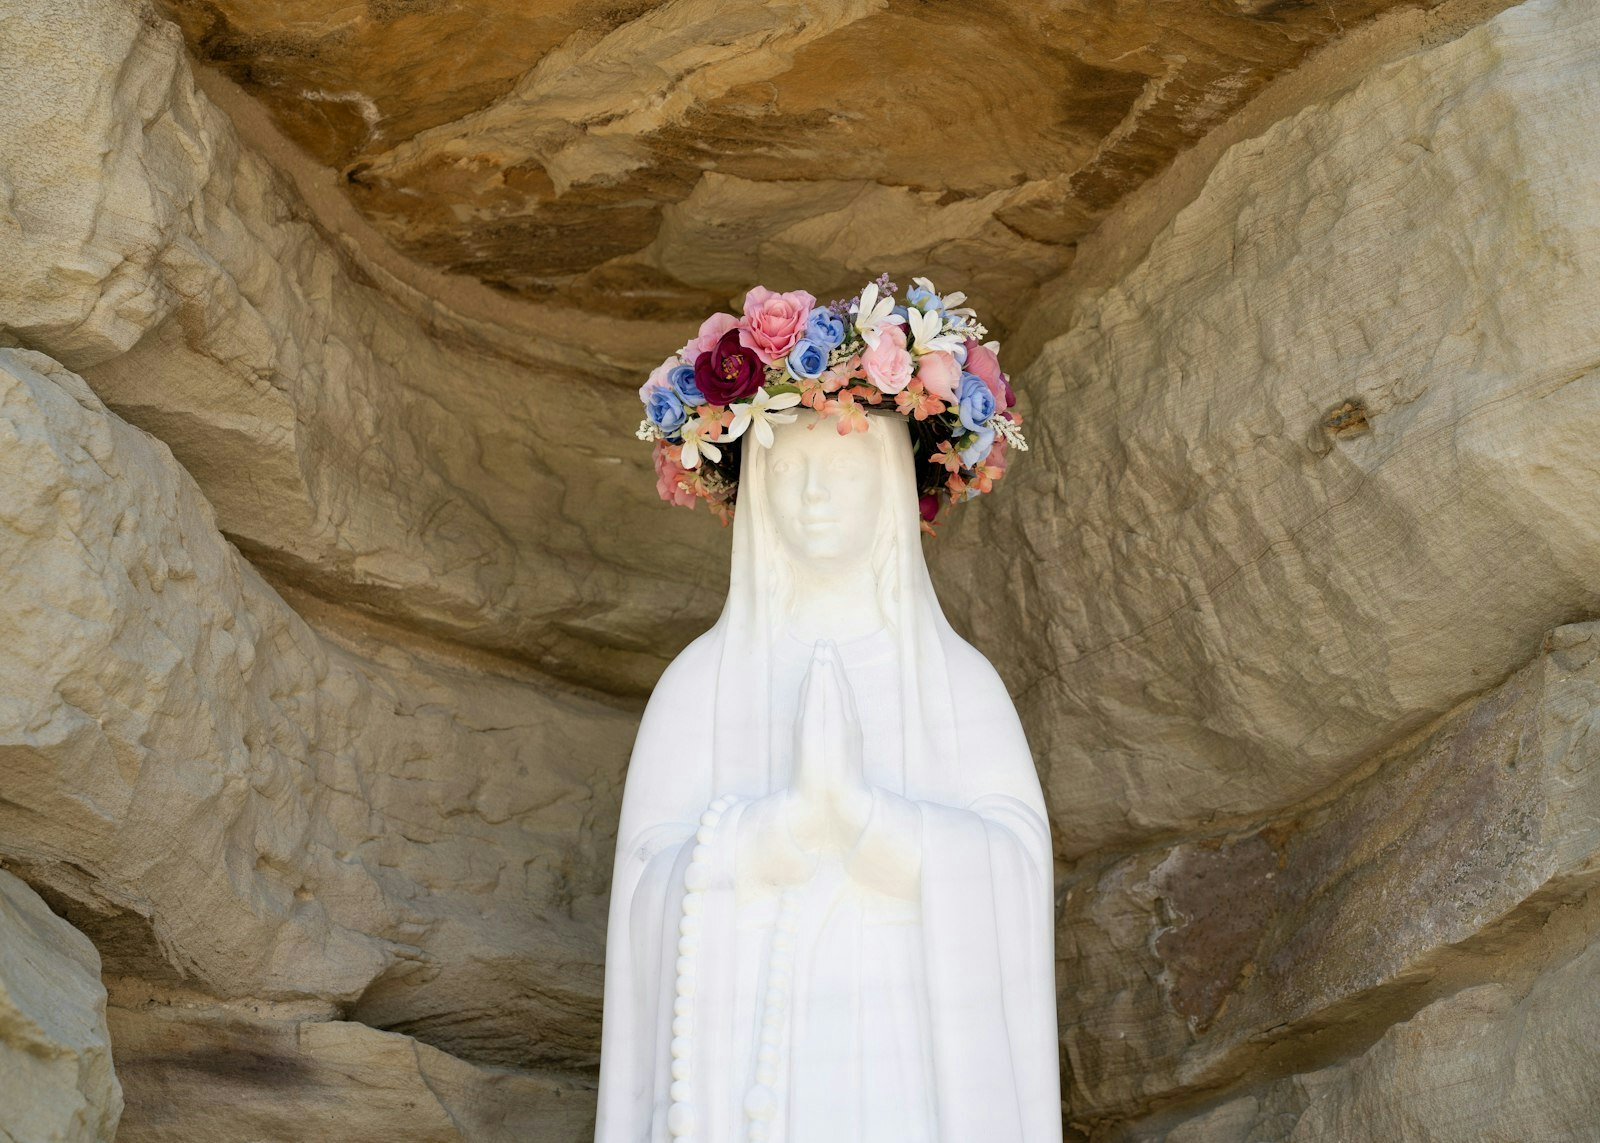 El Arzobispo Vigneron pidió que el rostro de la estatua de alabastro de Nuestra Señora de Lourdes reflejara la descripción proporcionada por Santa Bernardita Soubirous.